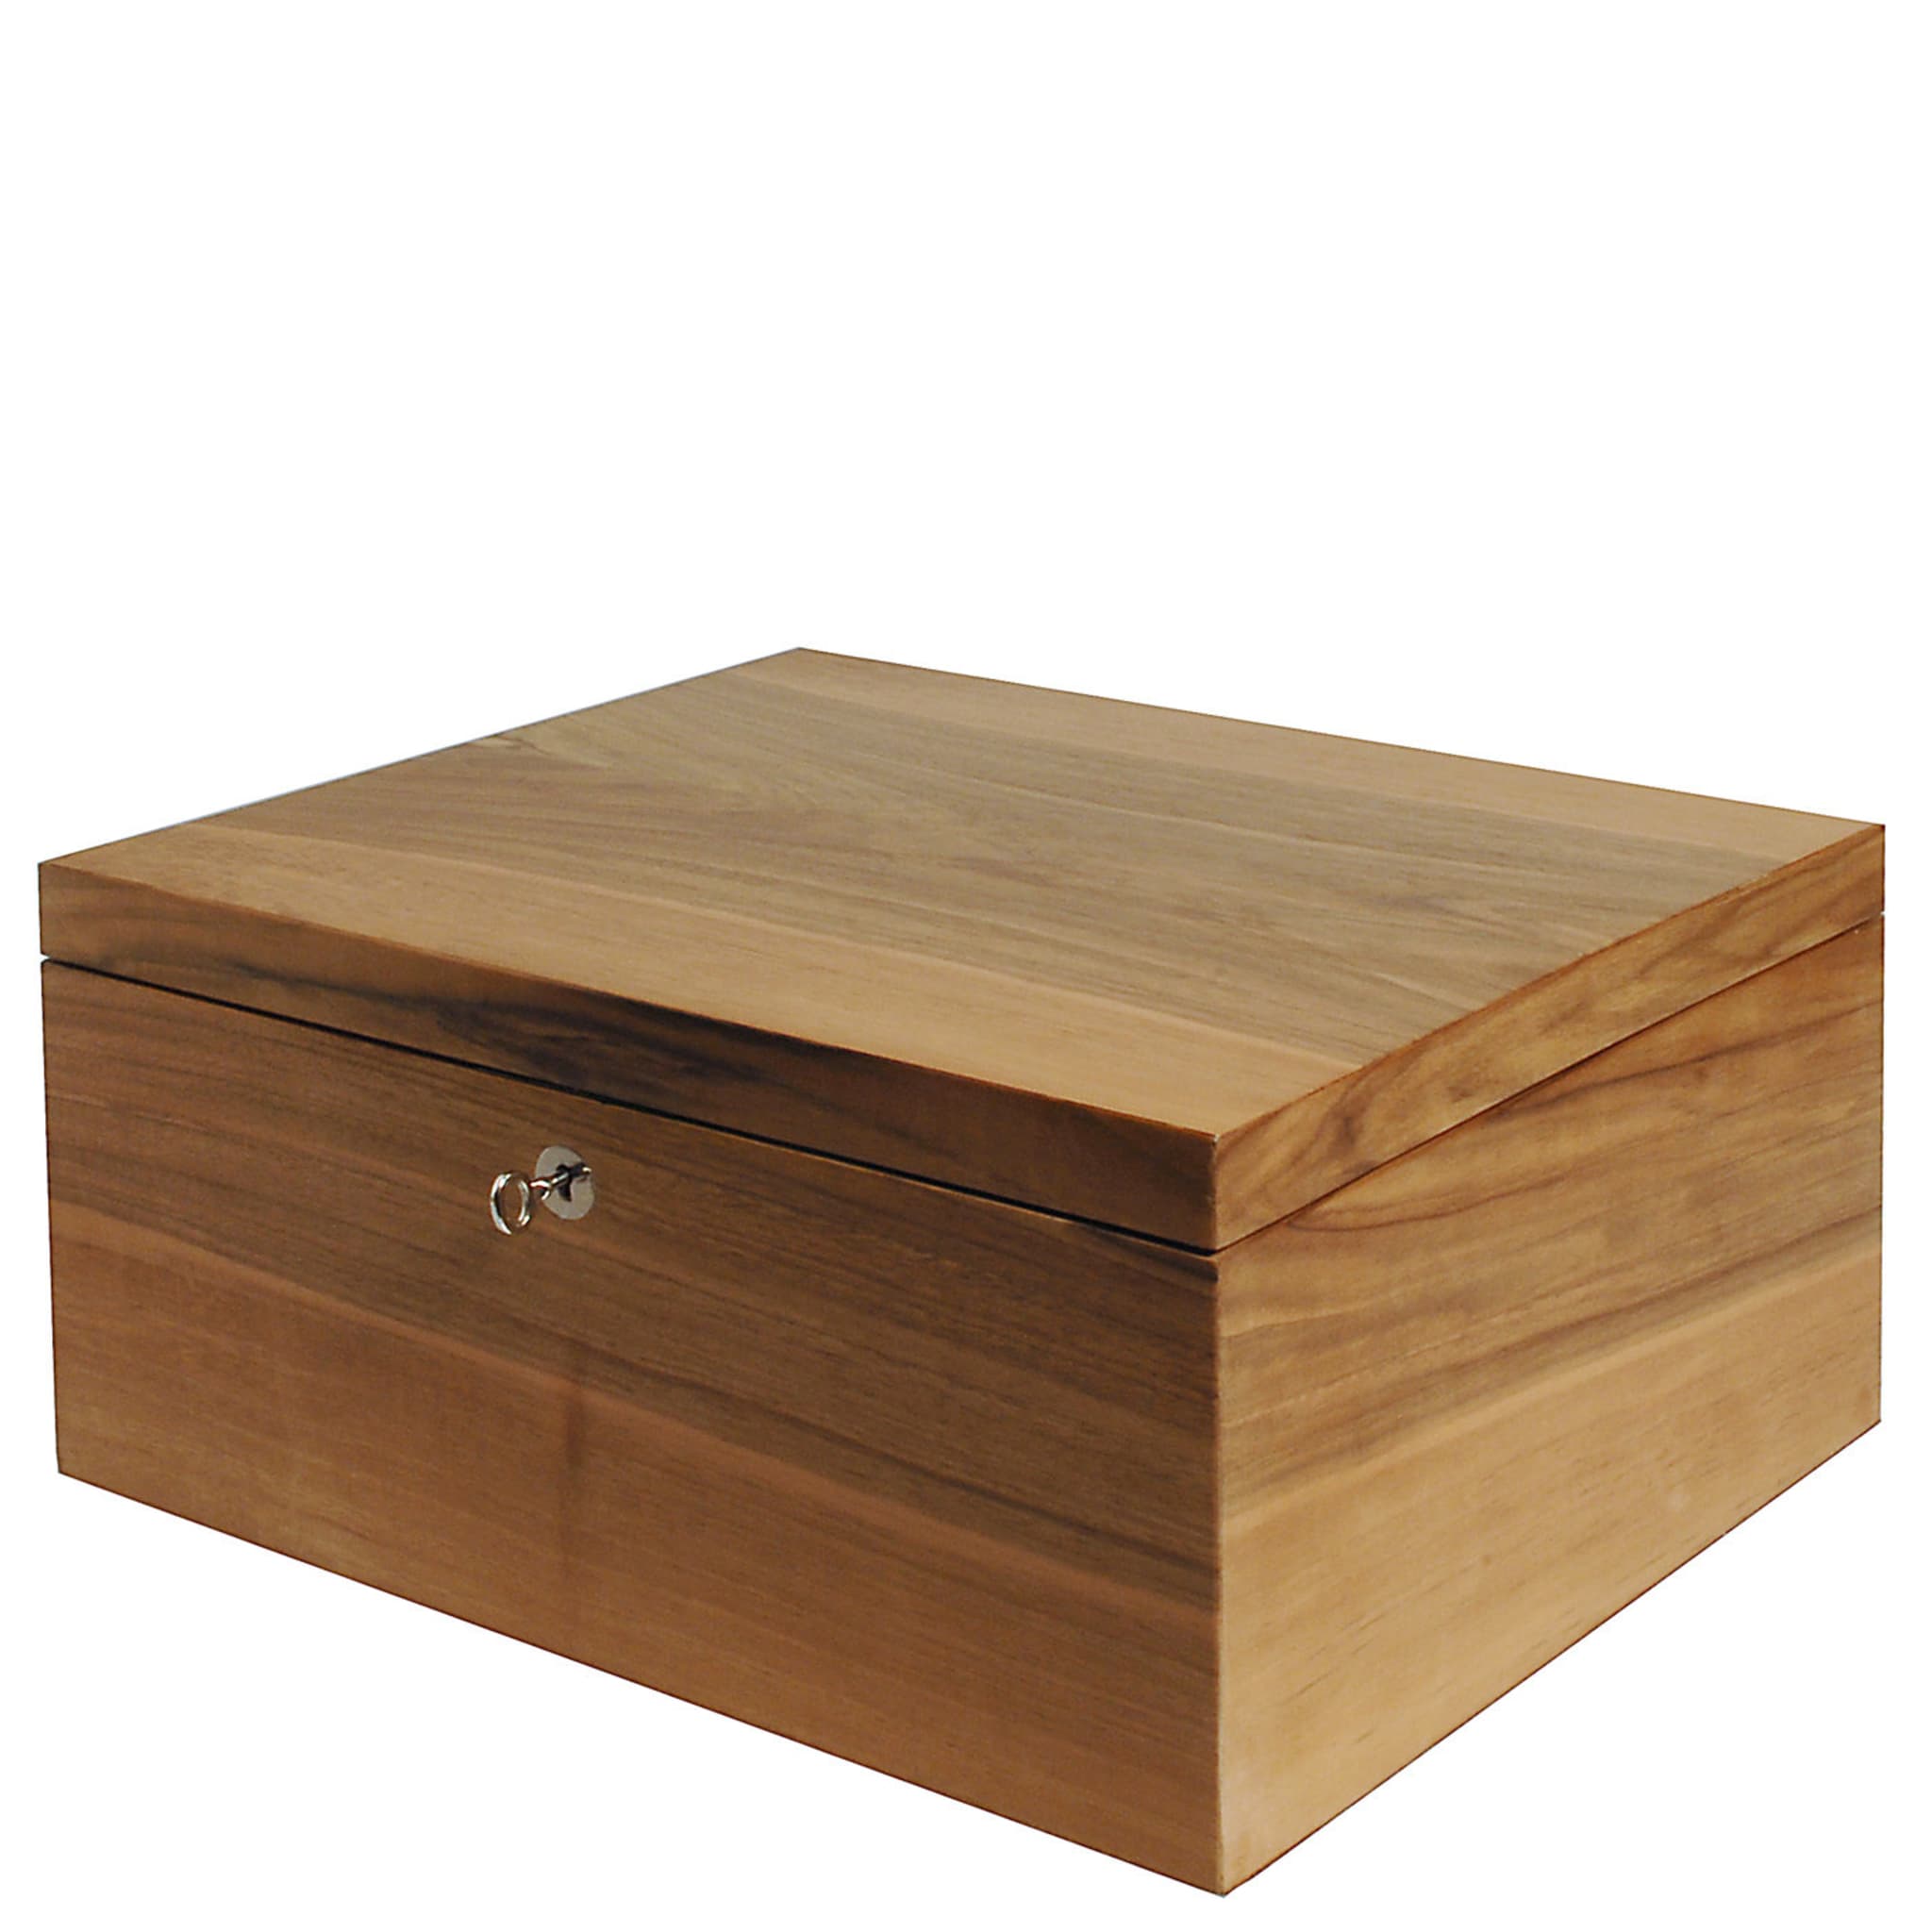 Box in Walnut Wood - Alternative view 4